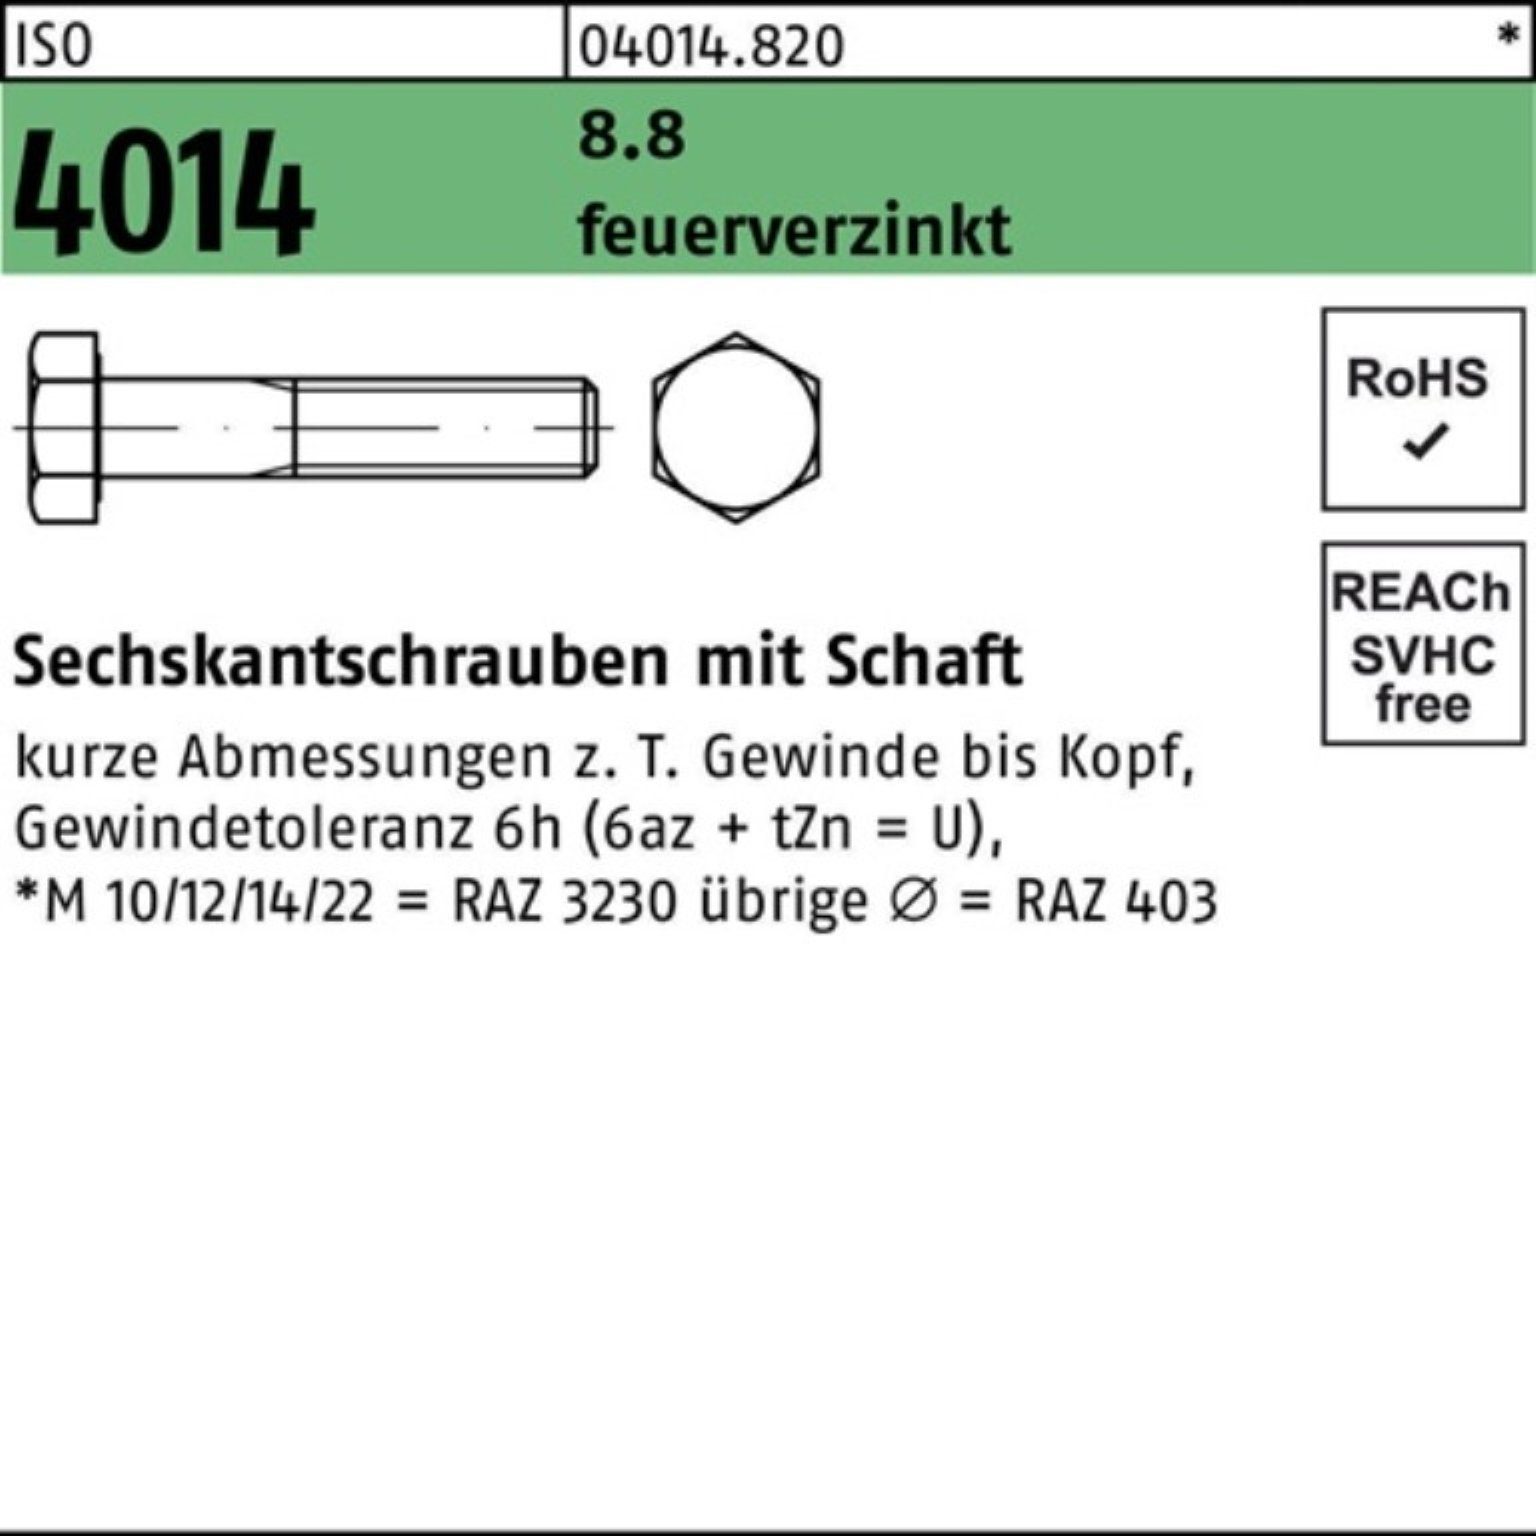 Bufab Sechskantschraube 100er Pack Sechskantschraube ISO 4014 Schaft M20x 210 8.8 feuerverz. 1